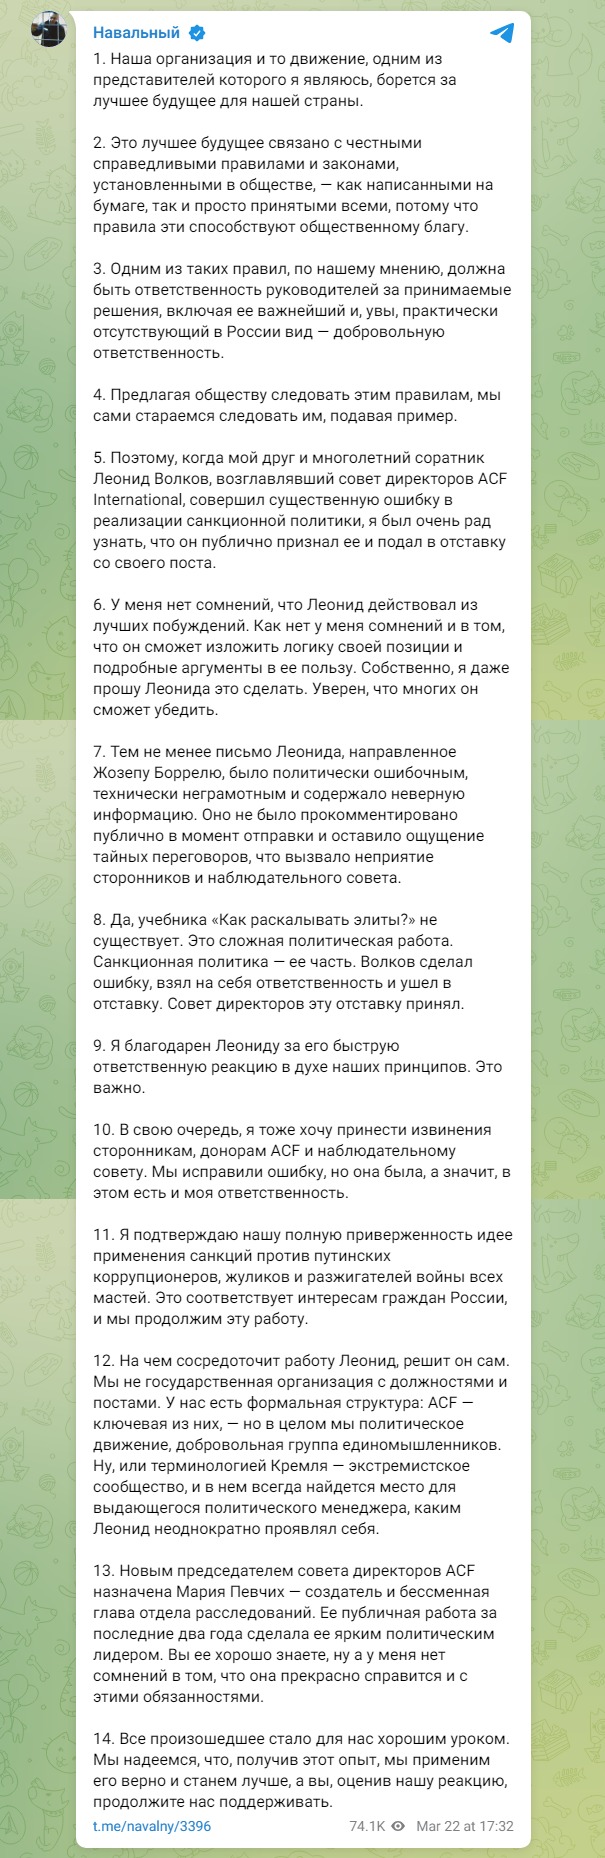 Скриншот из телеграм Навальный